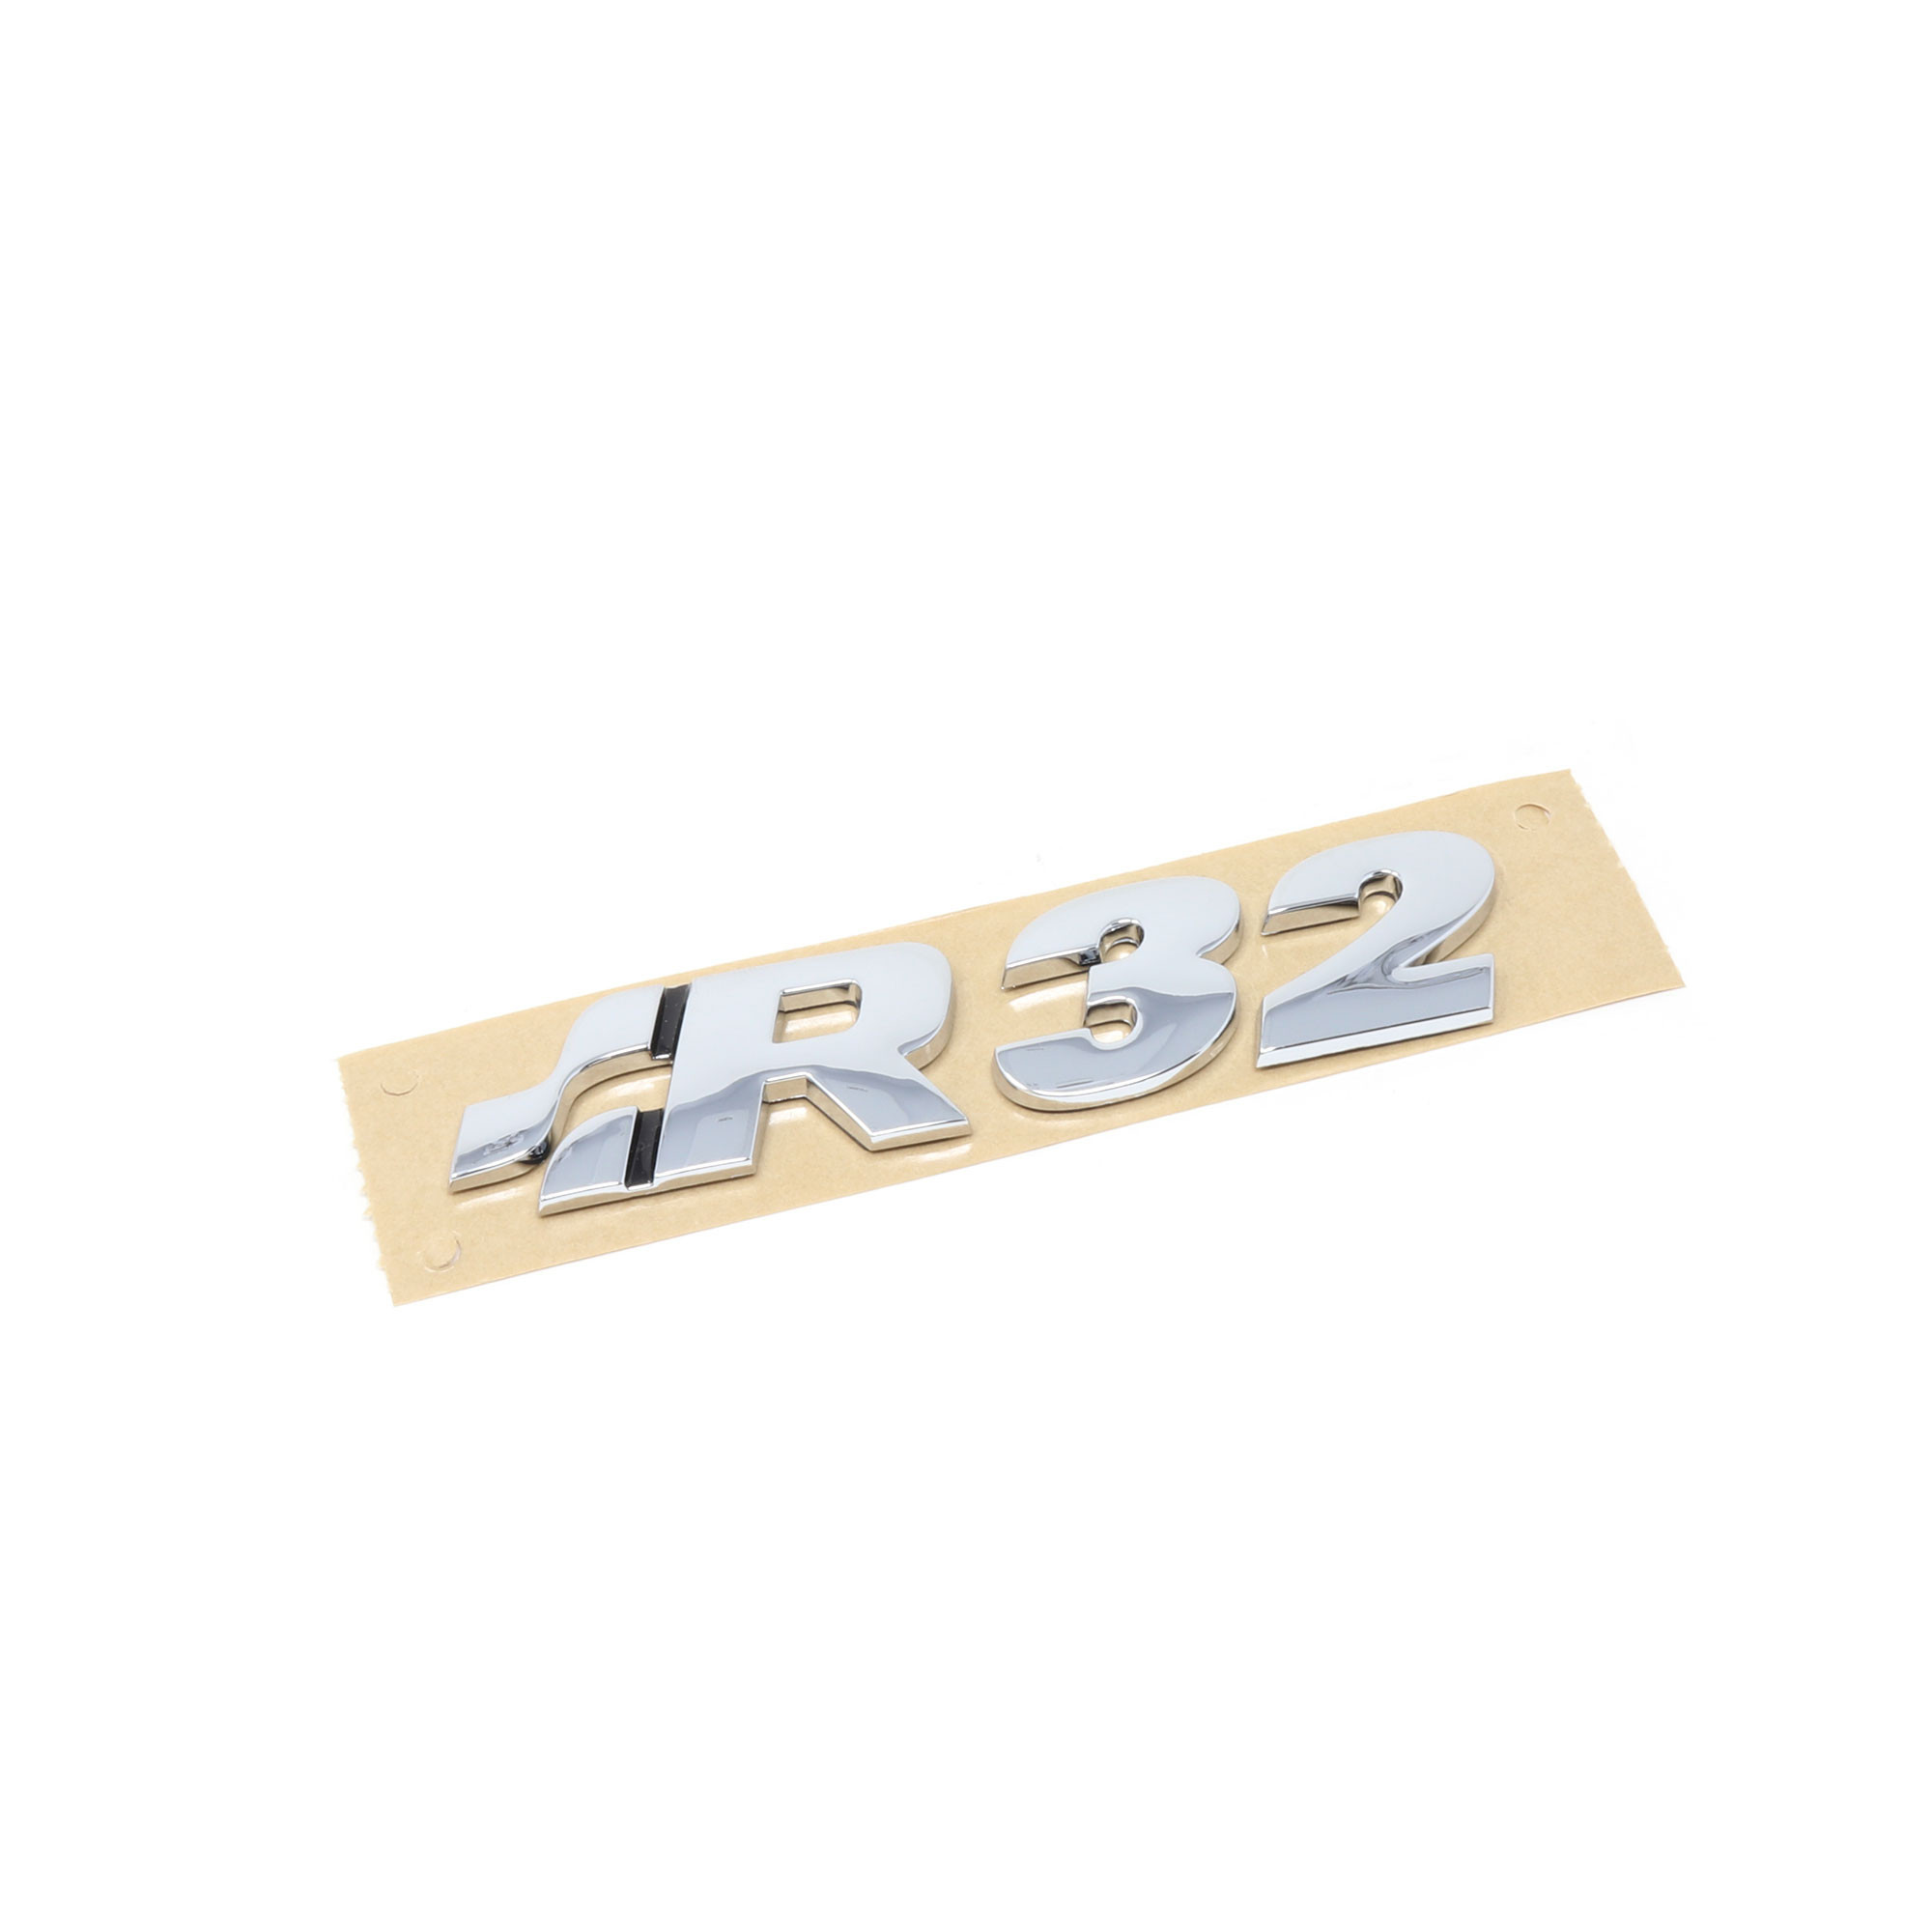 Silber Eternal Metallbuchstaben Aufkleber für V-Olkswagen Bora Golf Farbe: Silber Yppss R32 Logo Emblem für Heckklappe Kofferraum 